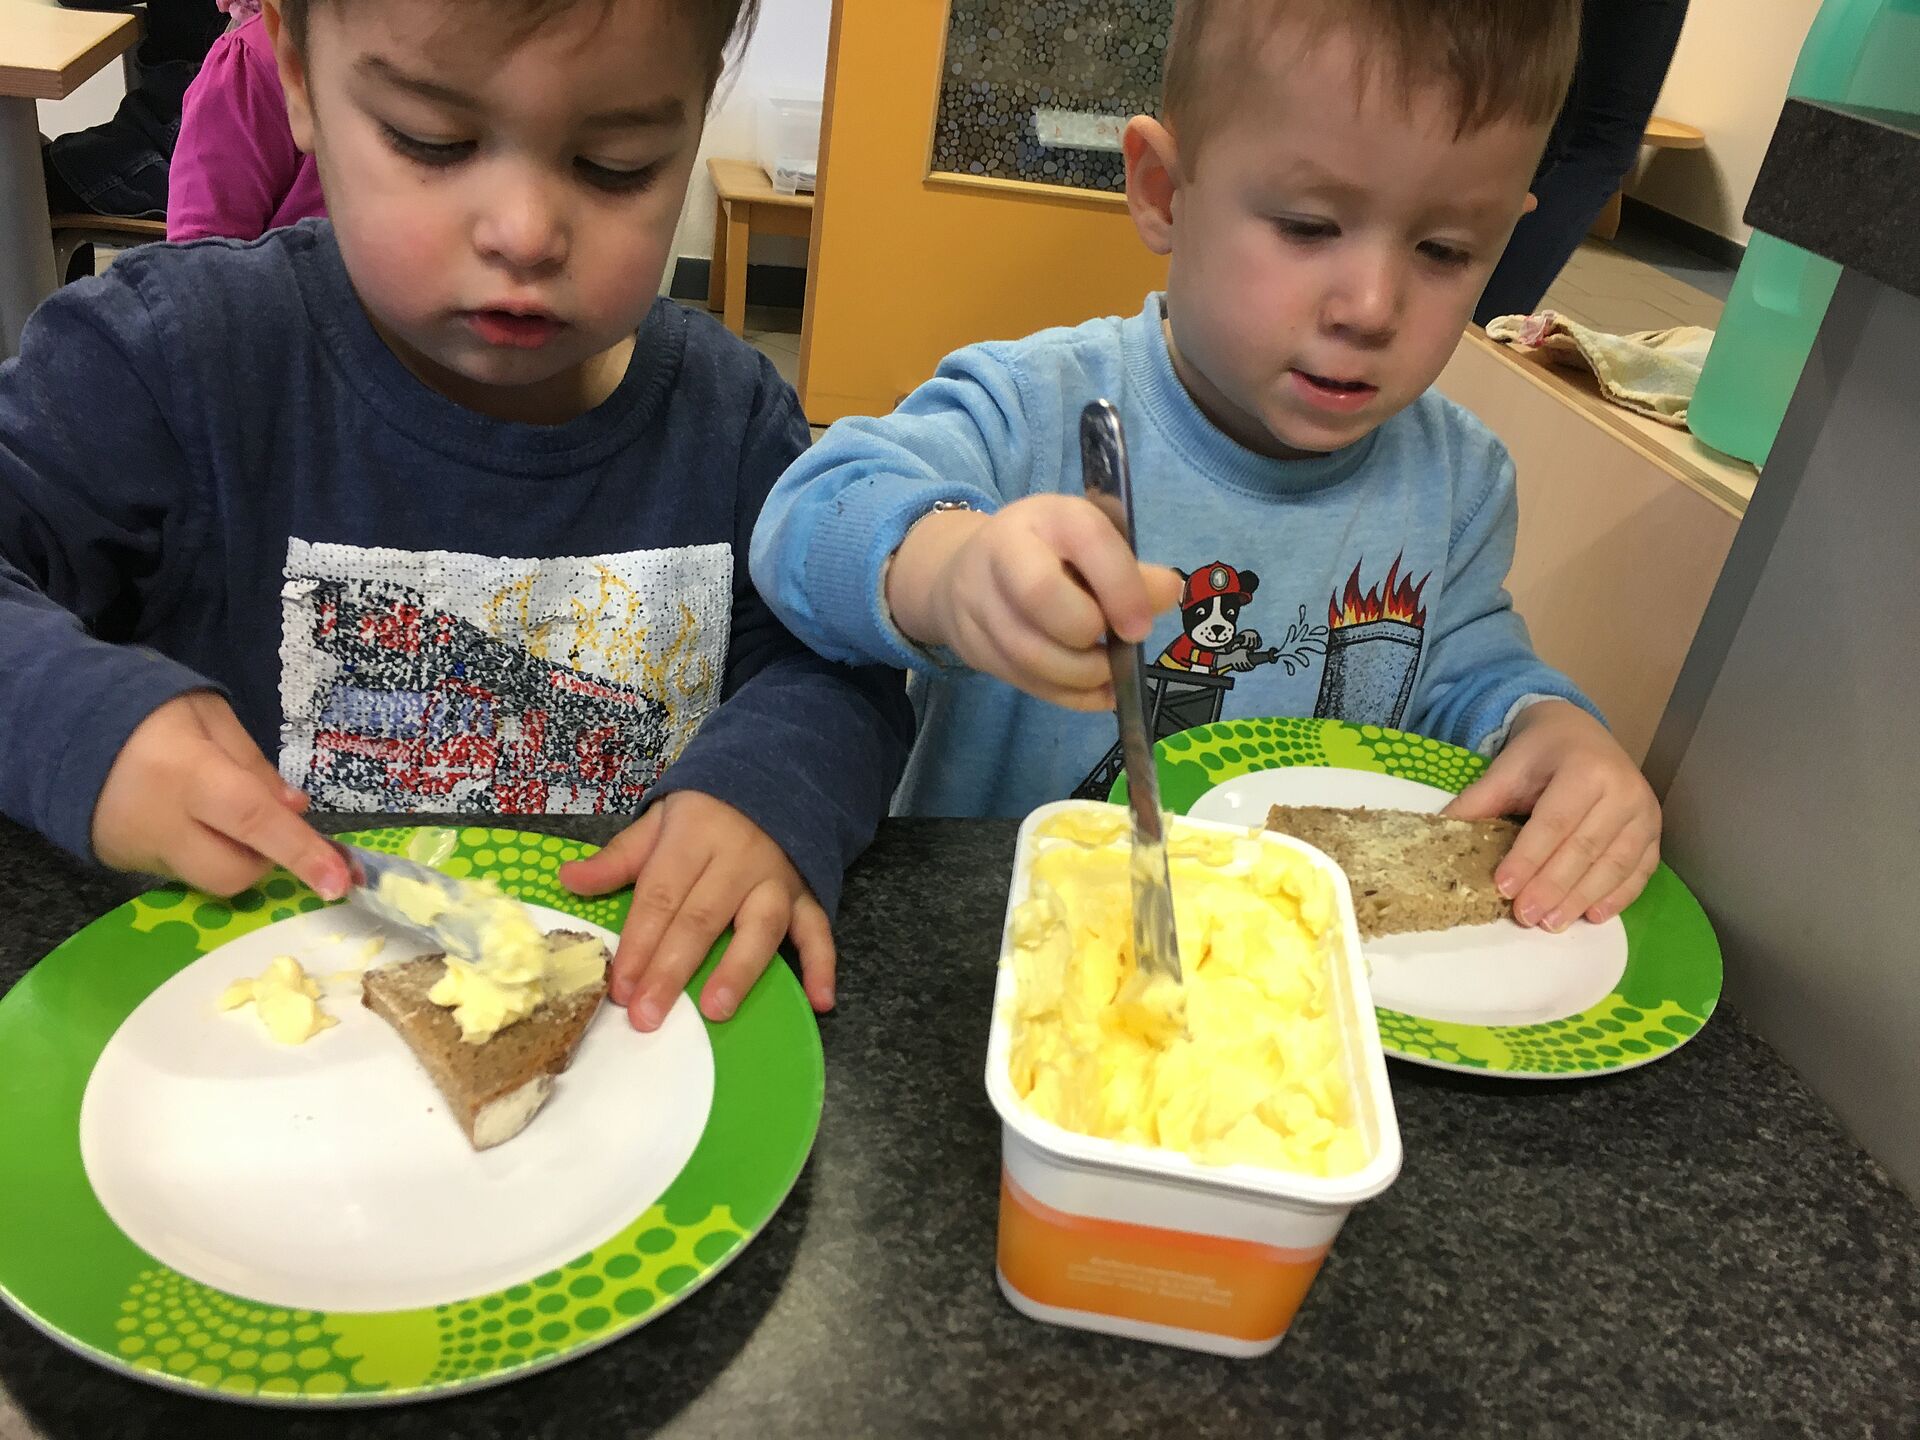 Kinder beim gemeinsamen Frühstück